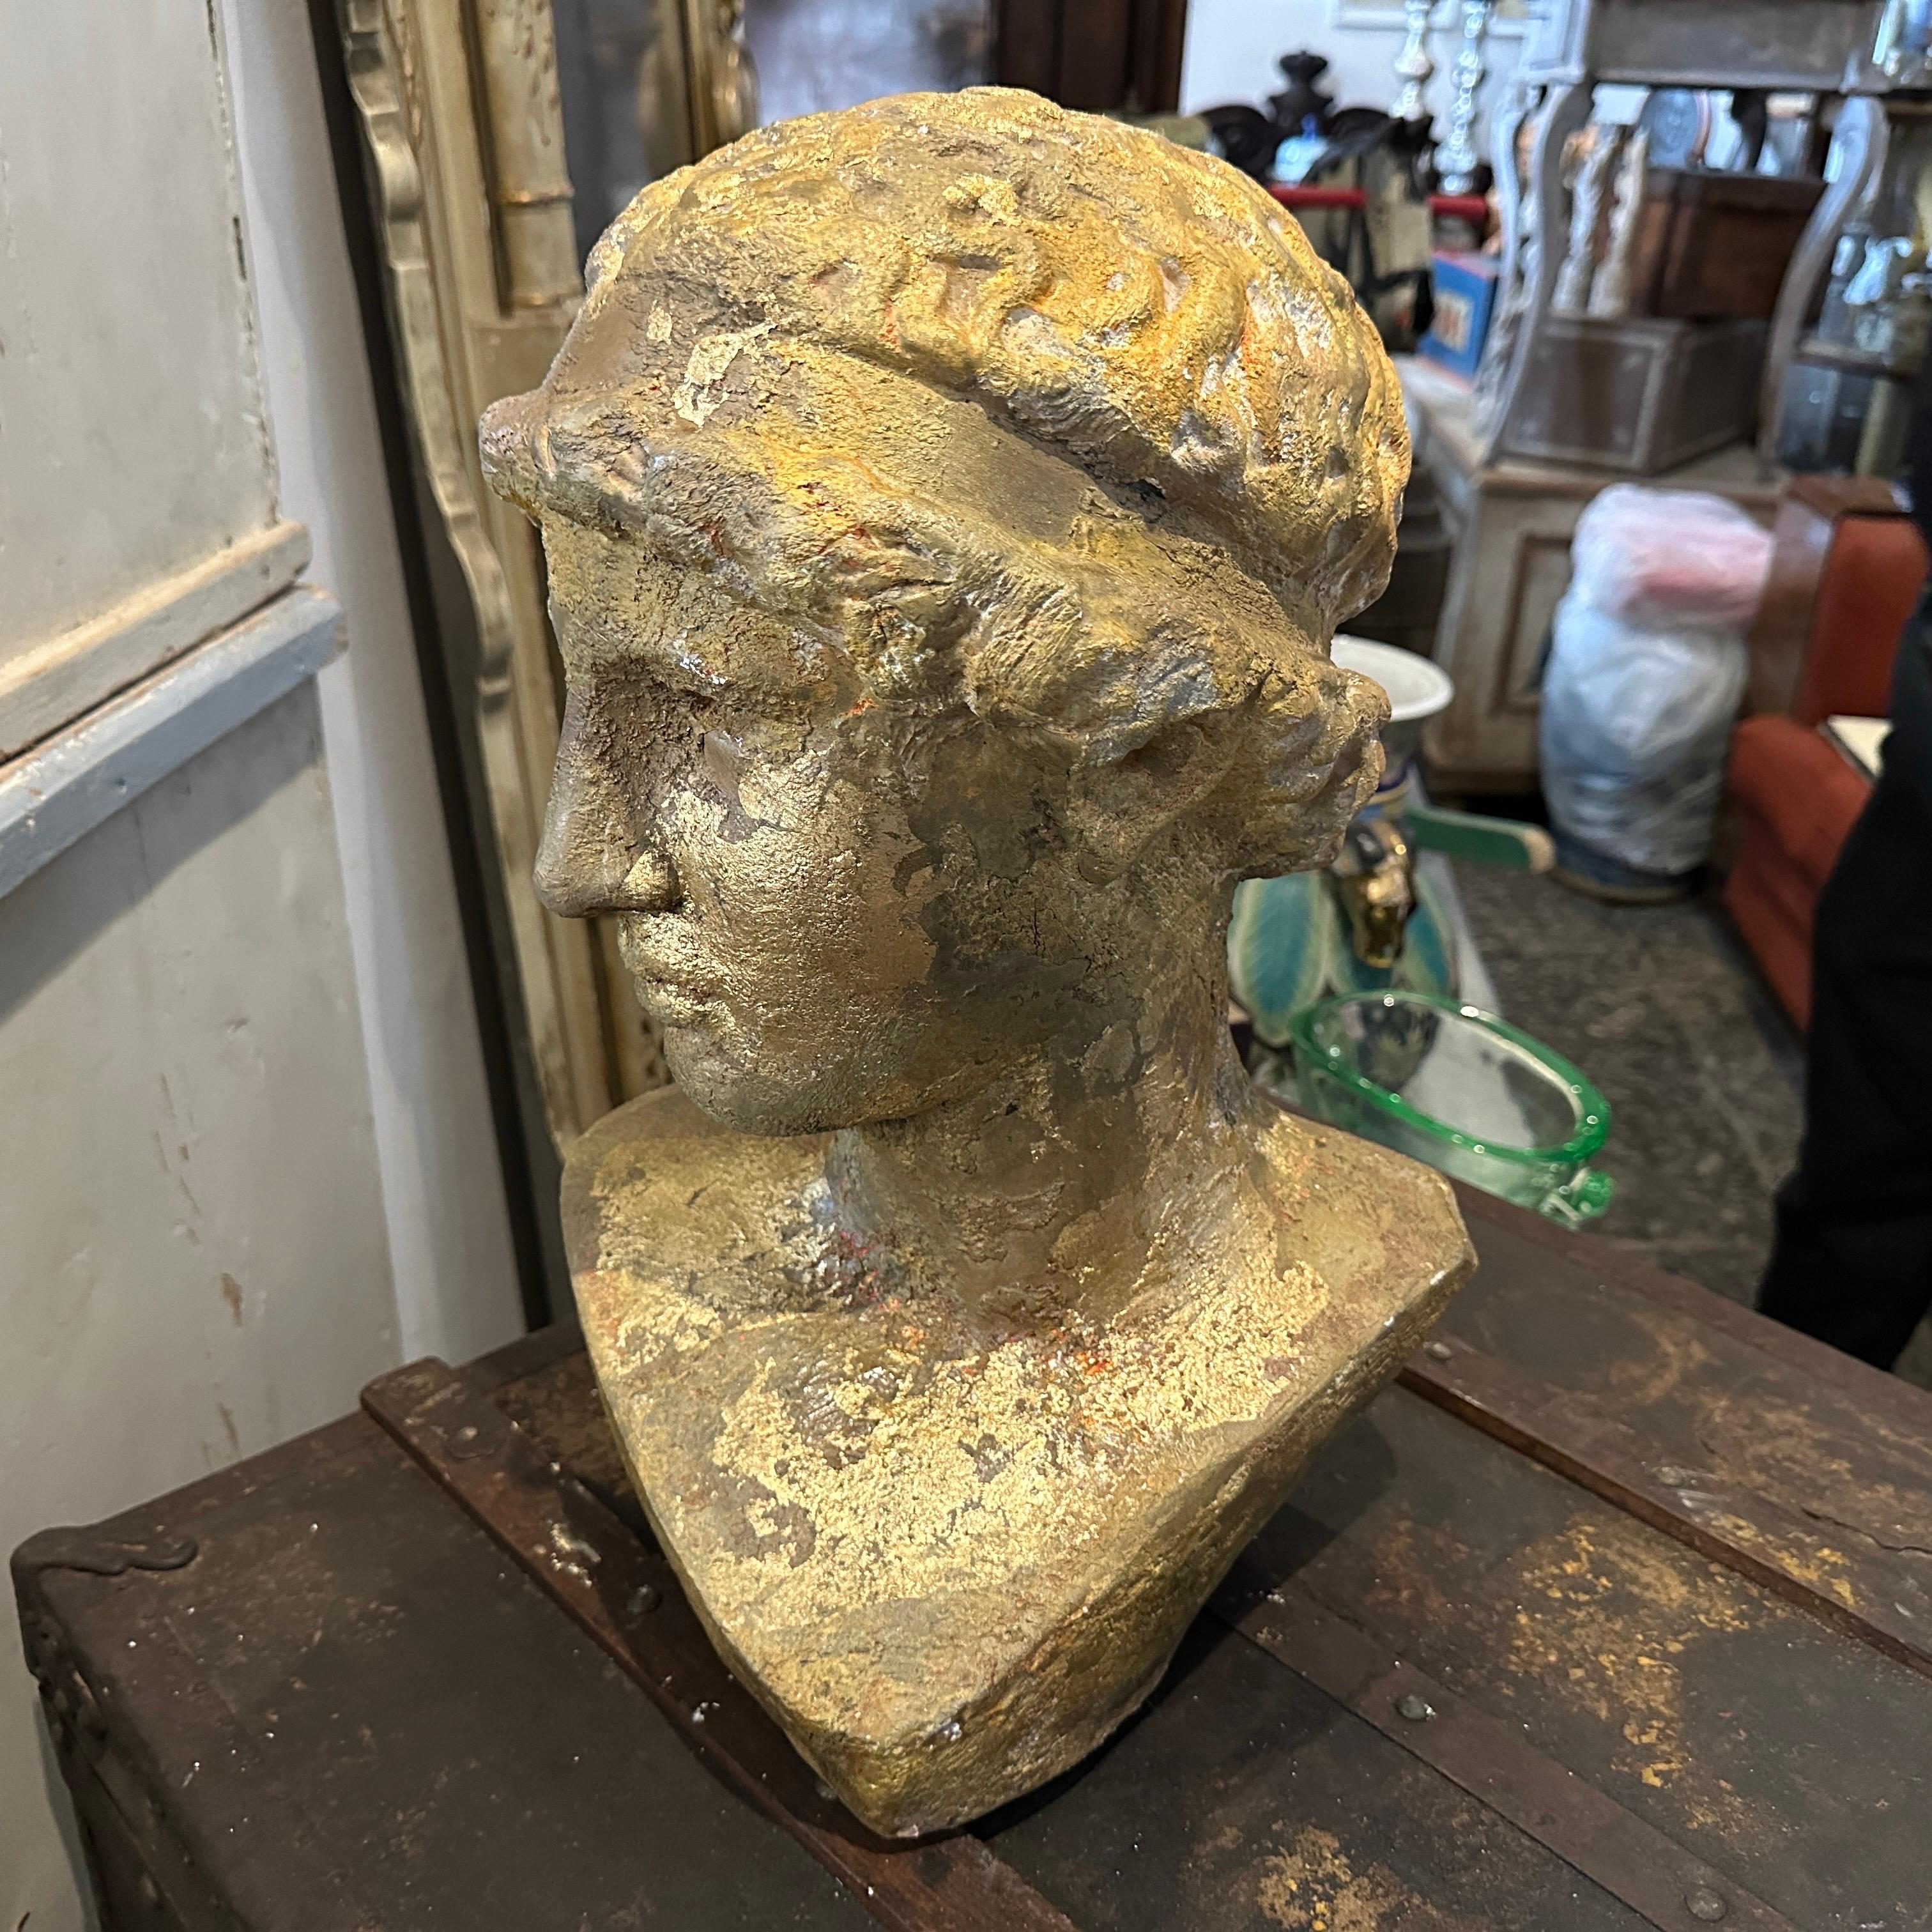 Buste d'Athéna en plâtre patiné à l'or provenant d'une Diptych Fine Arts de l'académie sicilienne. Les plâtres étaient patinés de différentes manières, celui-ci a été réalisé avec de l'or, de l'ambre et du marron pour ce résultat étonnant. Compte